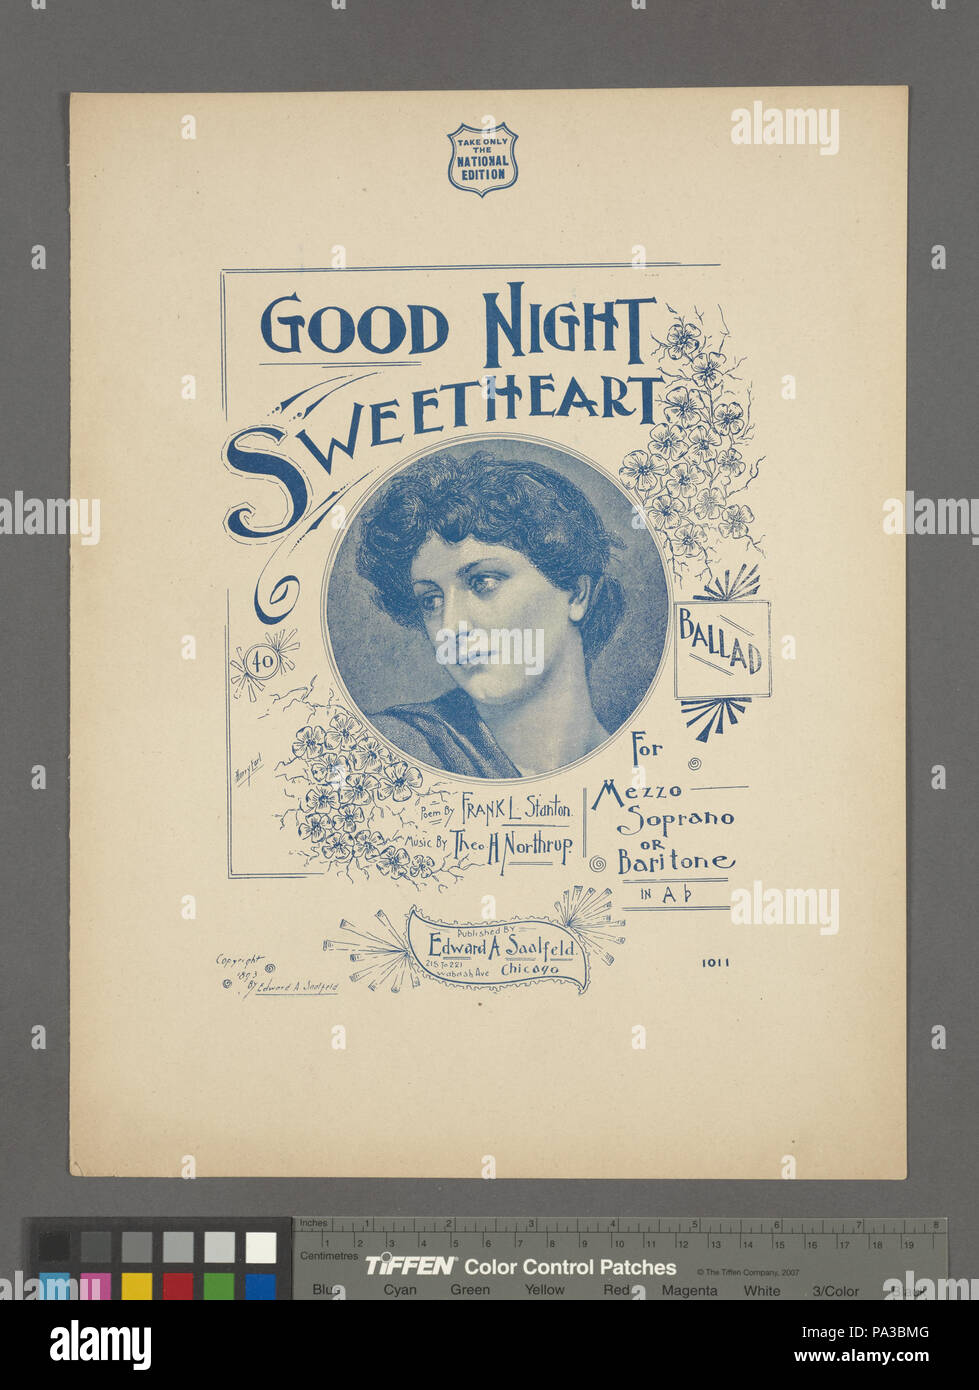 717 Good night sweetheart - ballad (NYPL Hades-449172-1157359 ...